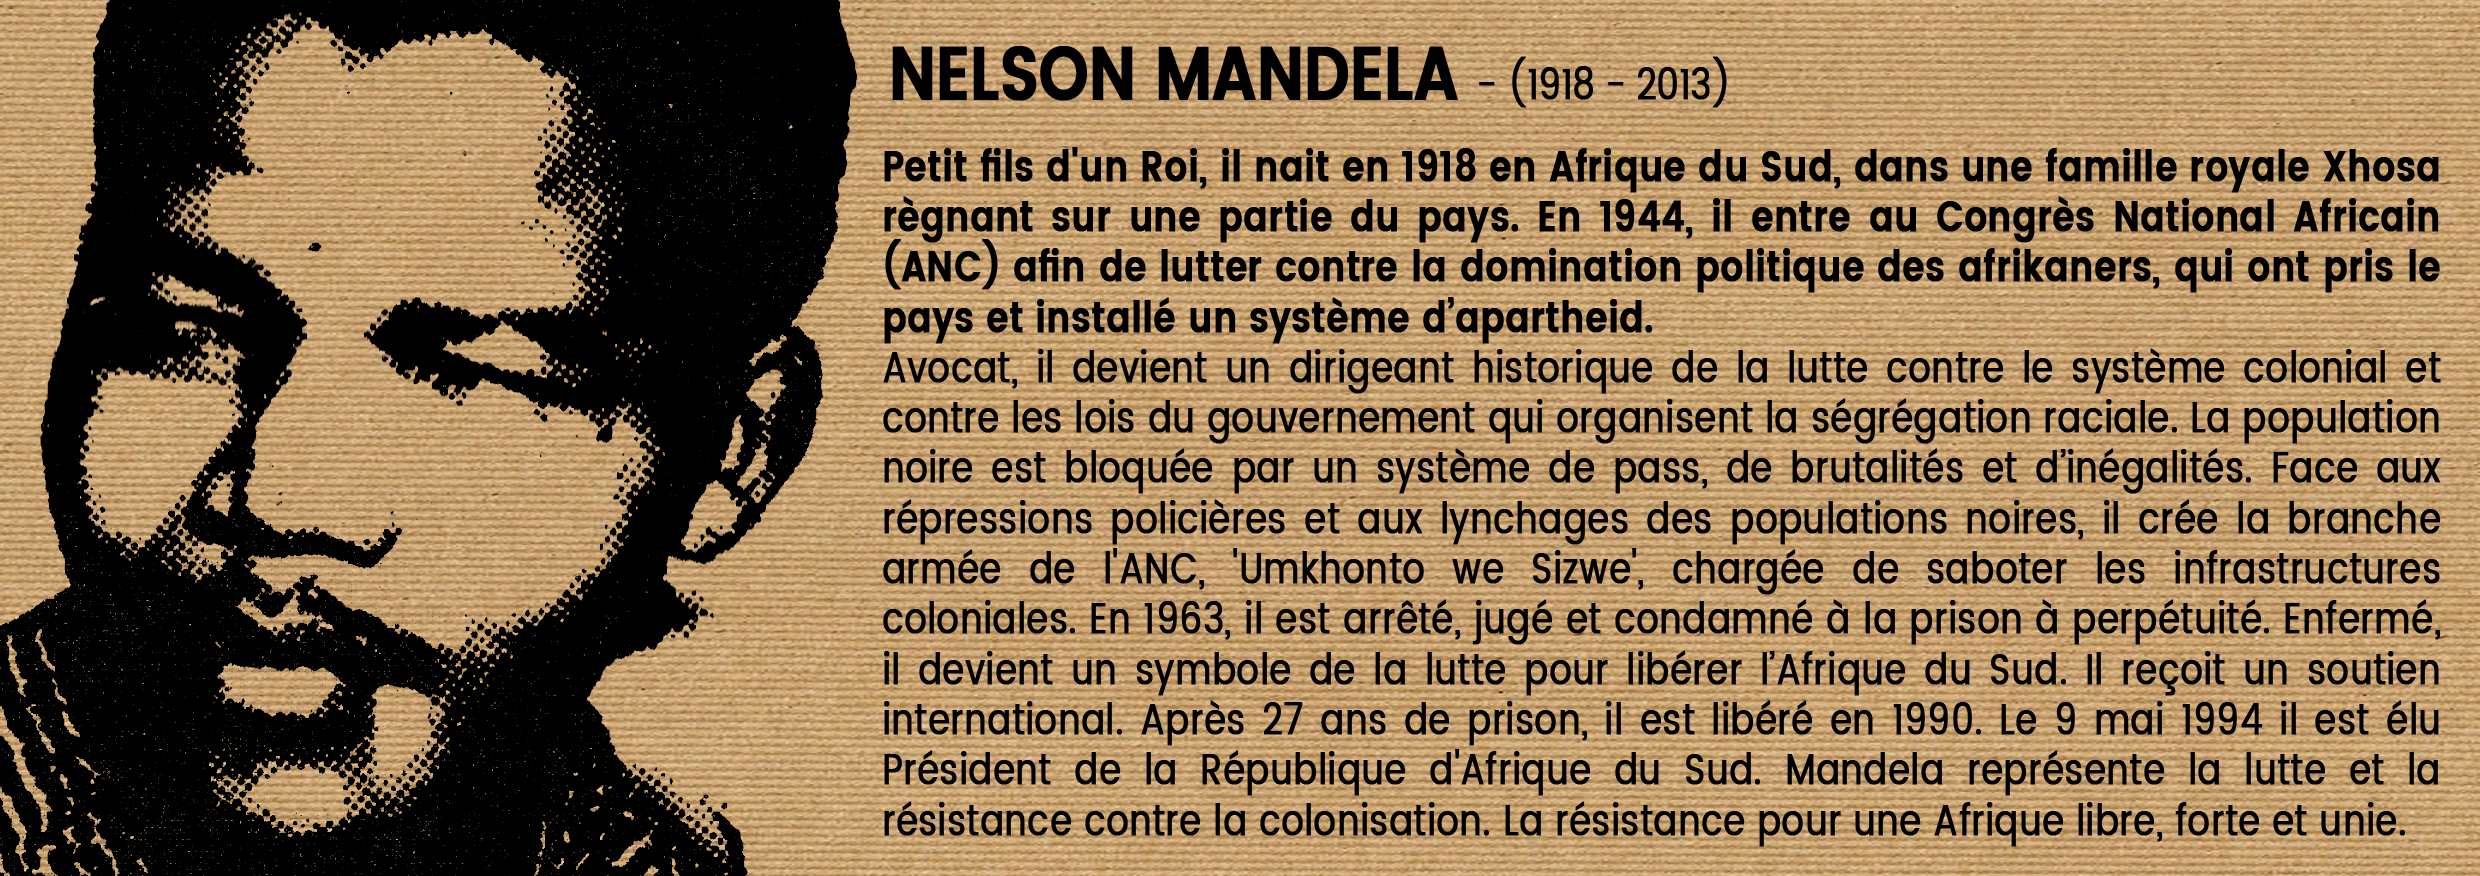 Nelson Mandela Histoire